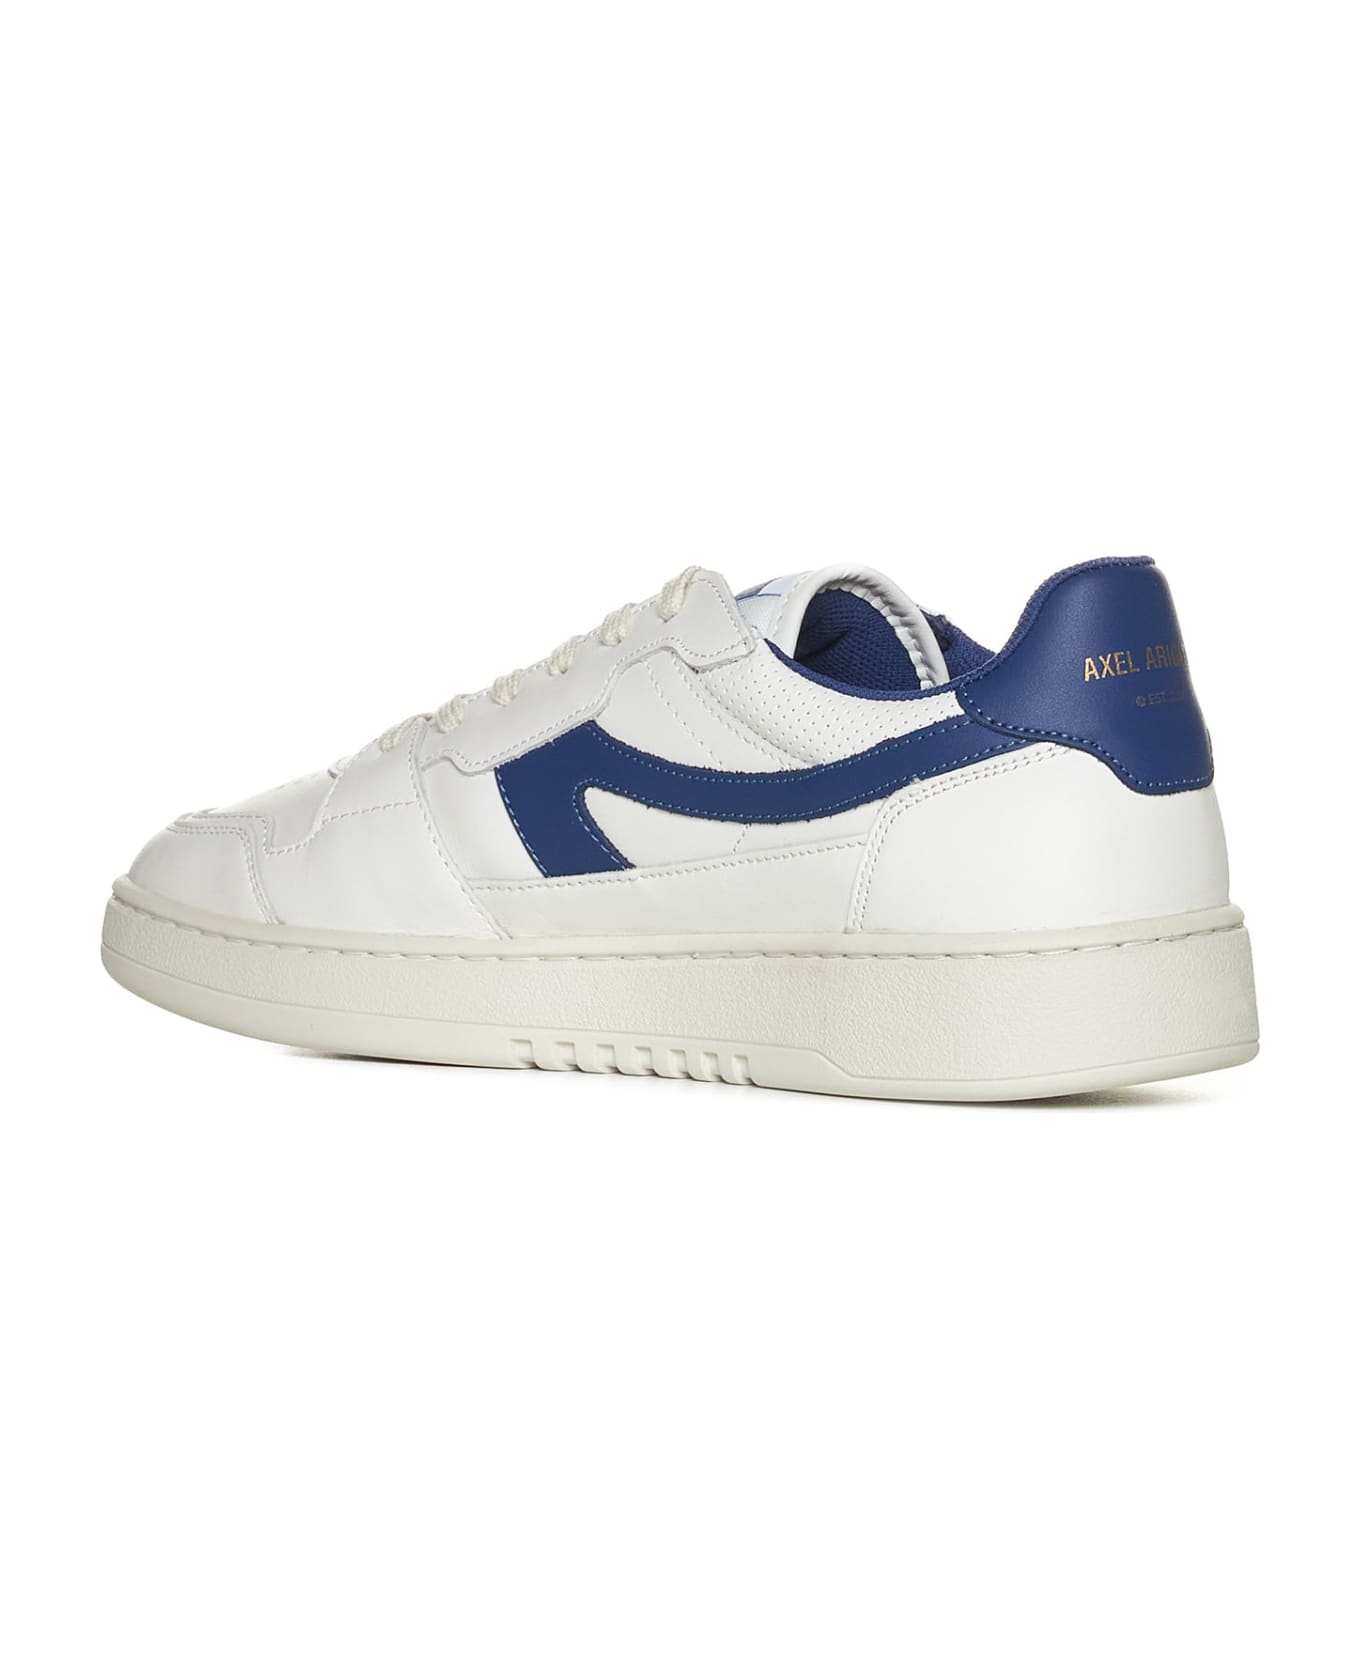 Axel Arigato Sneakers - White / blue